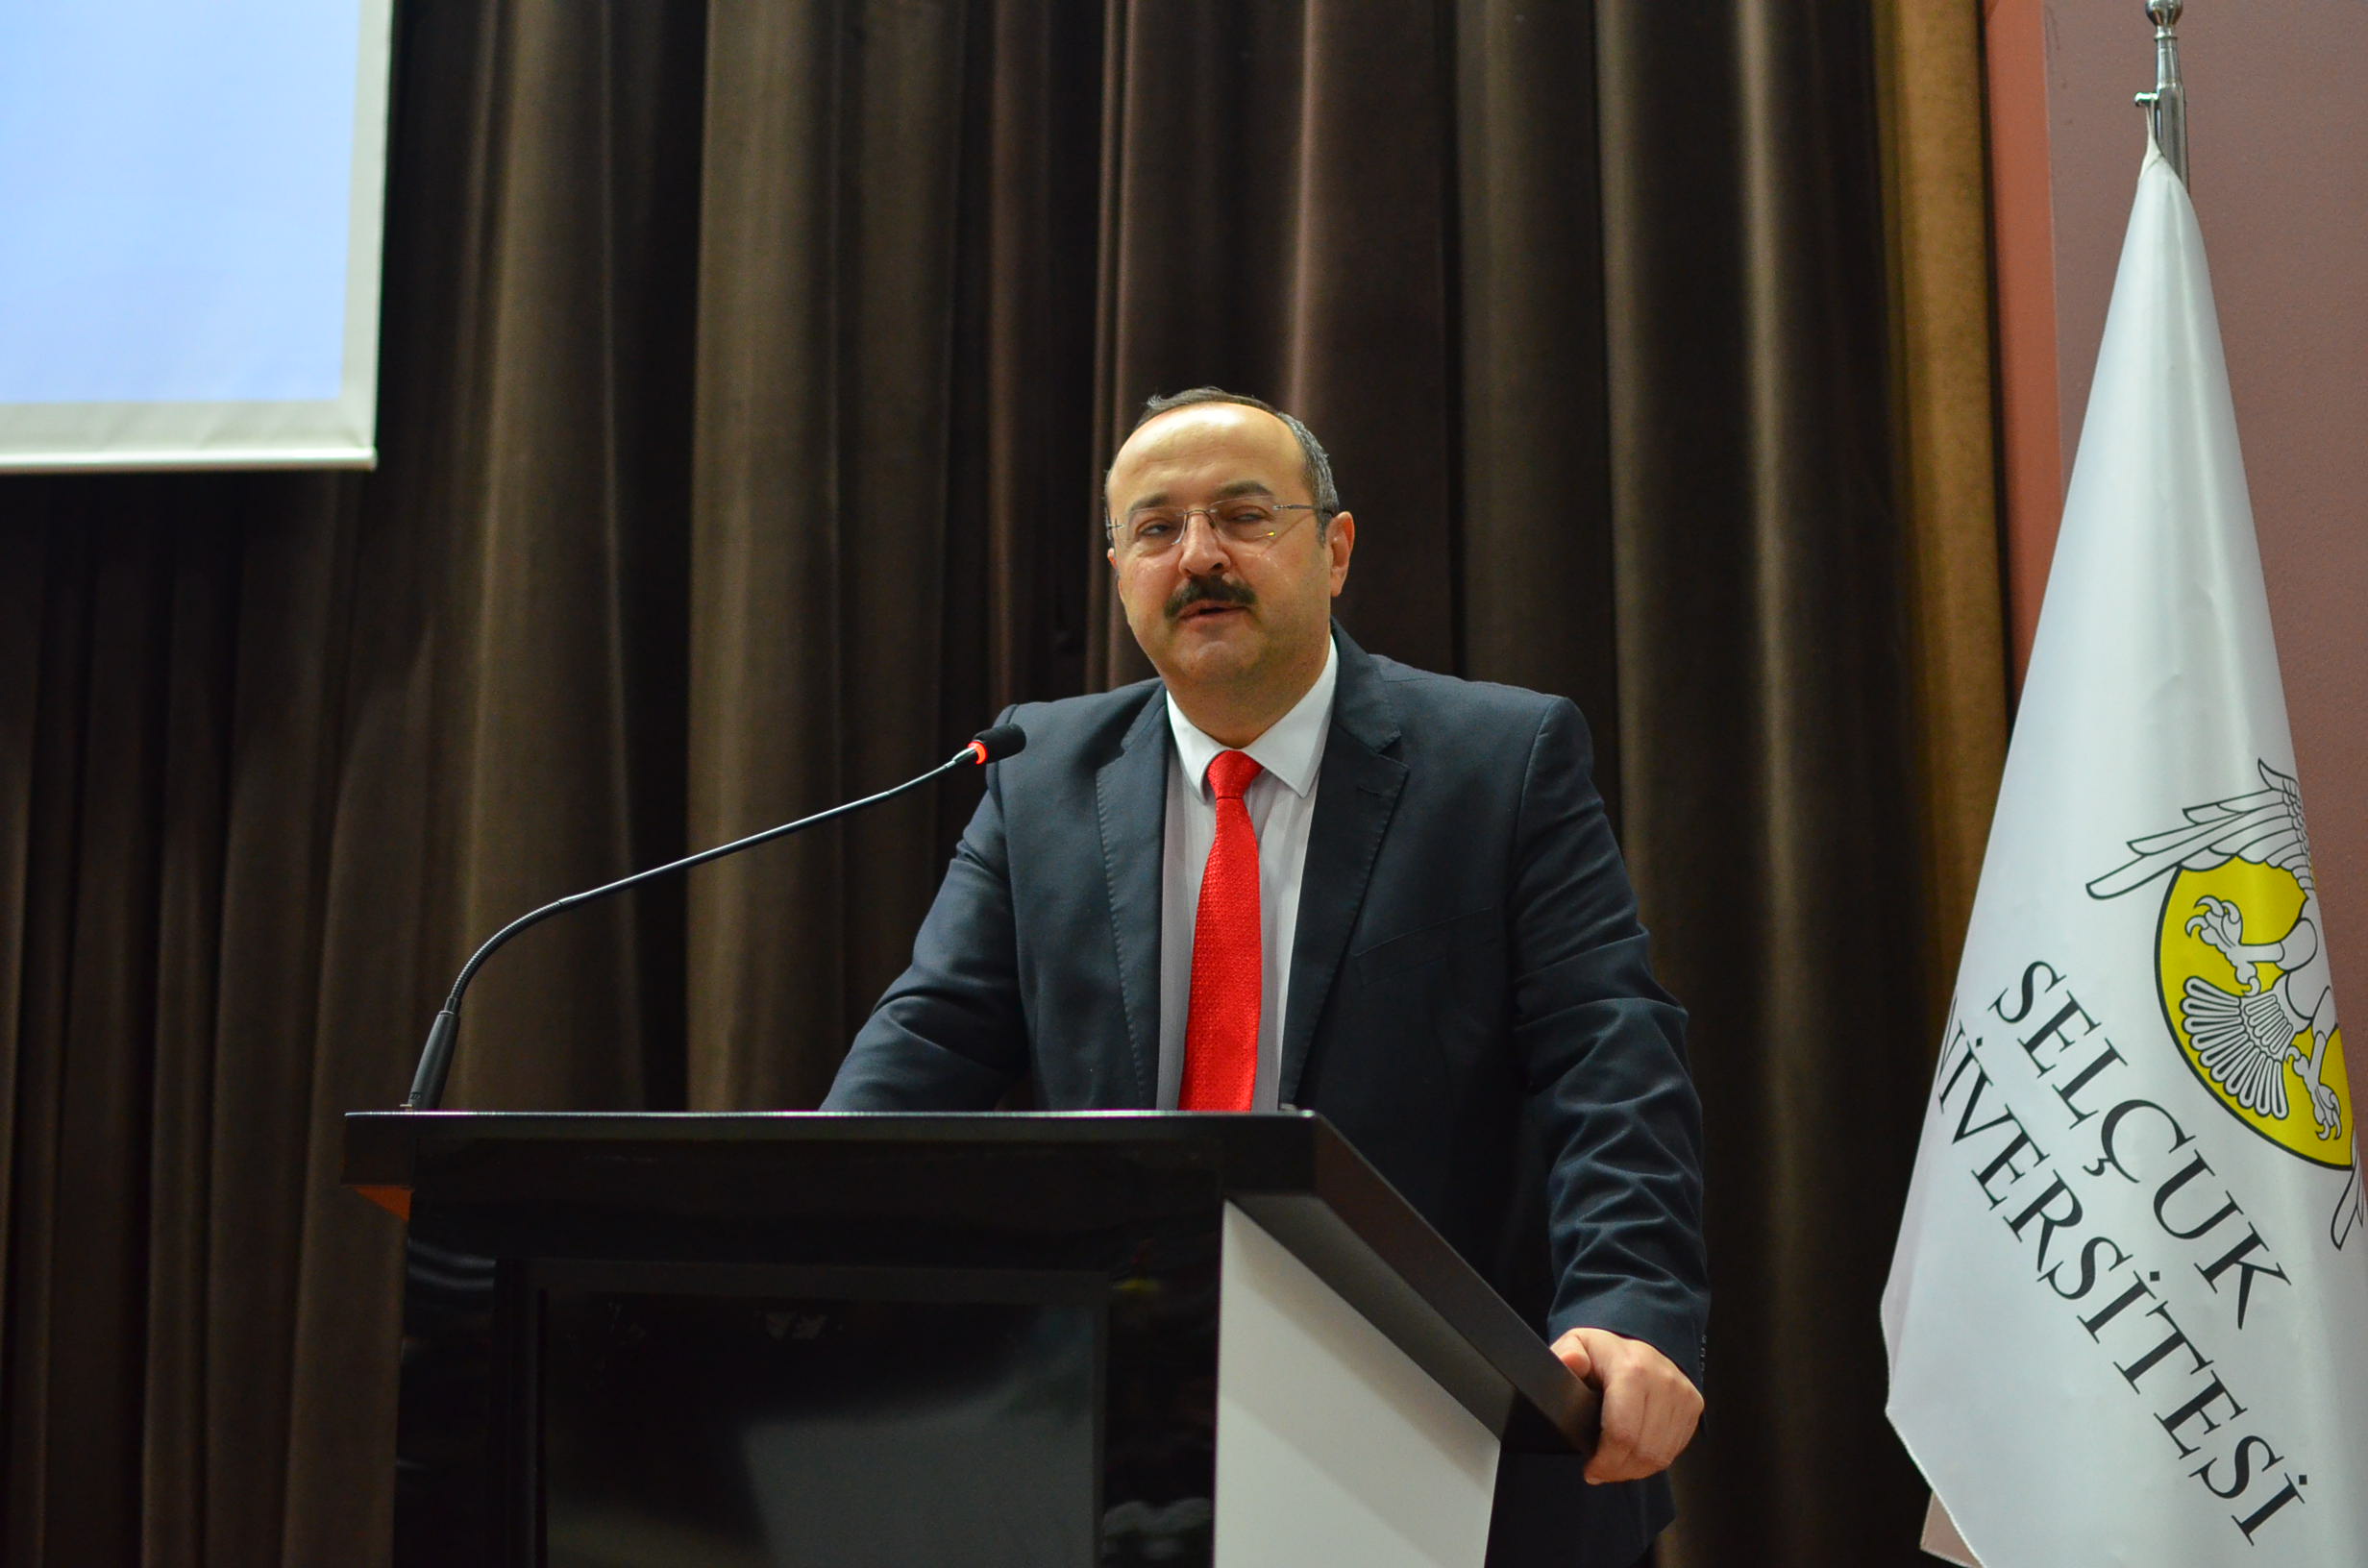 Wakil Rektor Selcuk Universitesi Prof. Dr Ahmet Kagan Karabulut menyampaikan sambutan